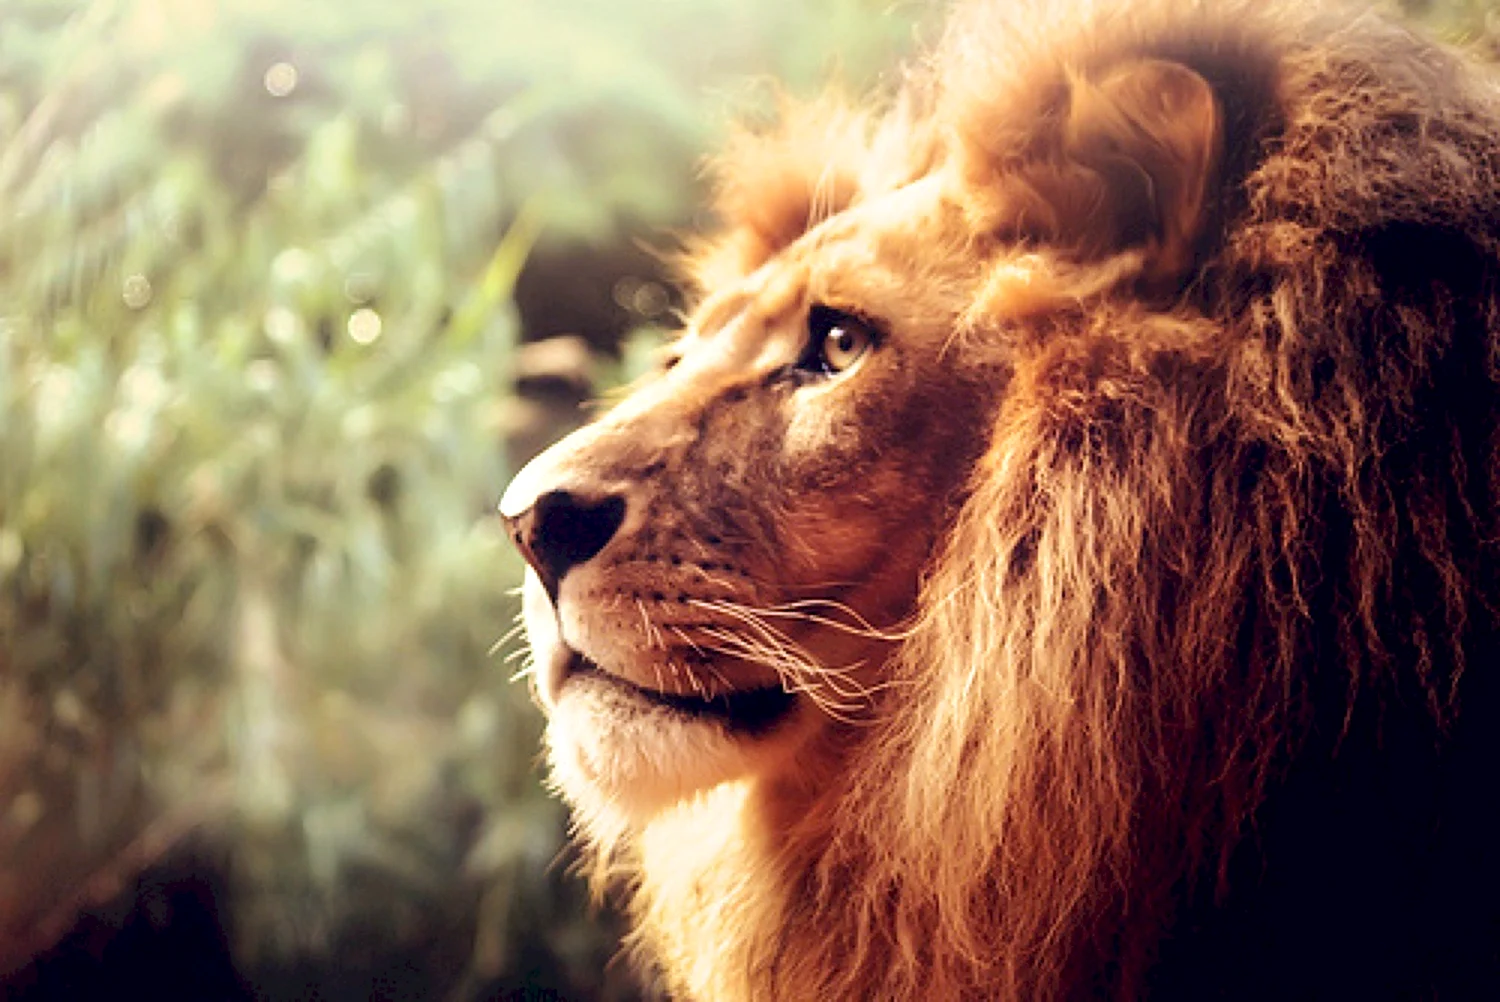 Аватар с белым львом, лев с белой шерстью — Фото аватарки